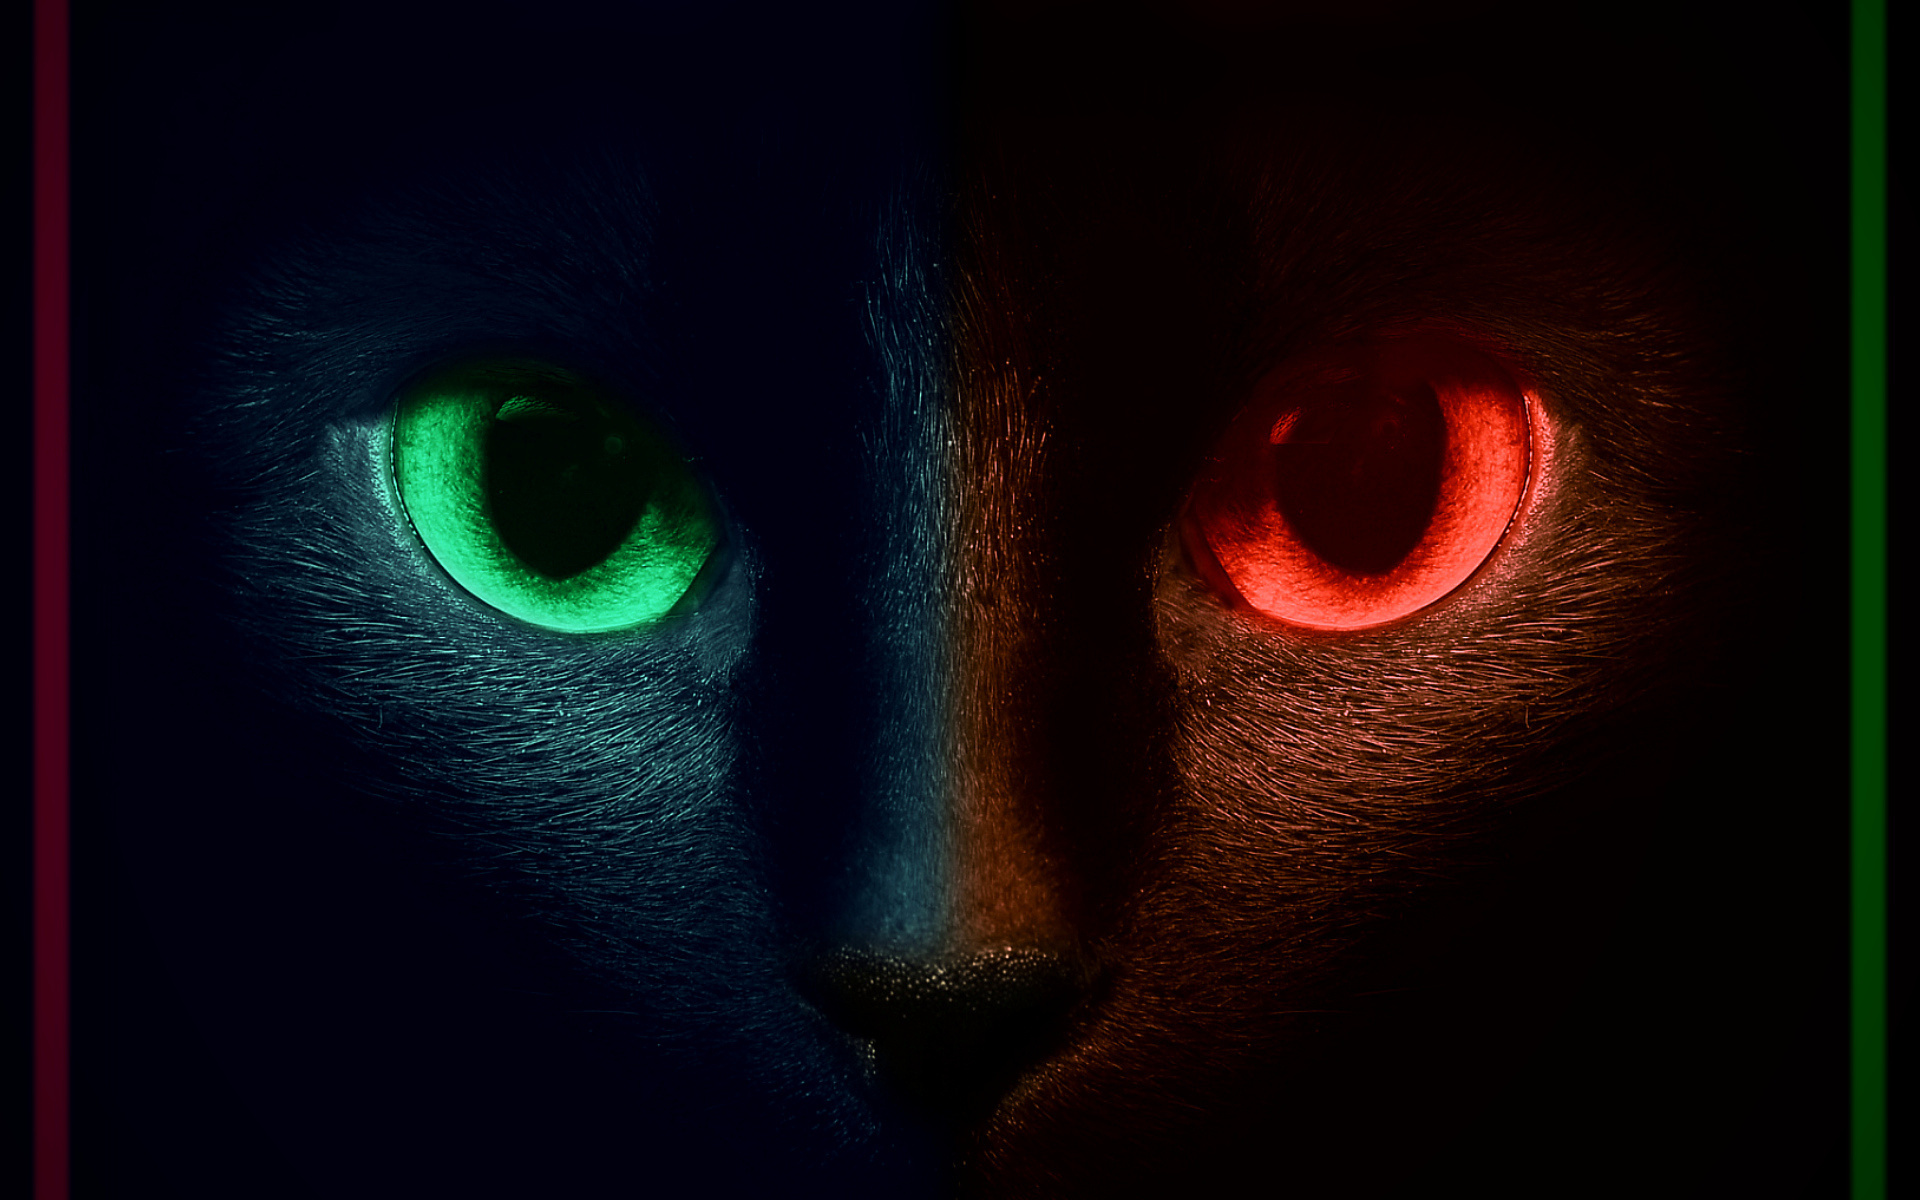 фанфик глаза пантеры светятся в ночи фото 102